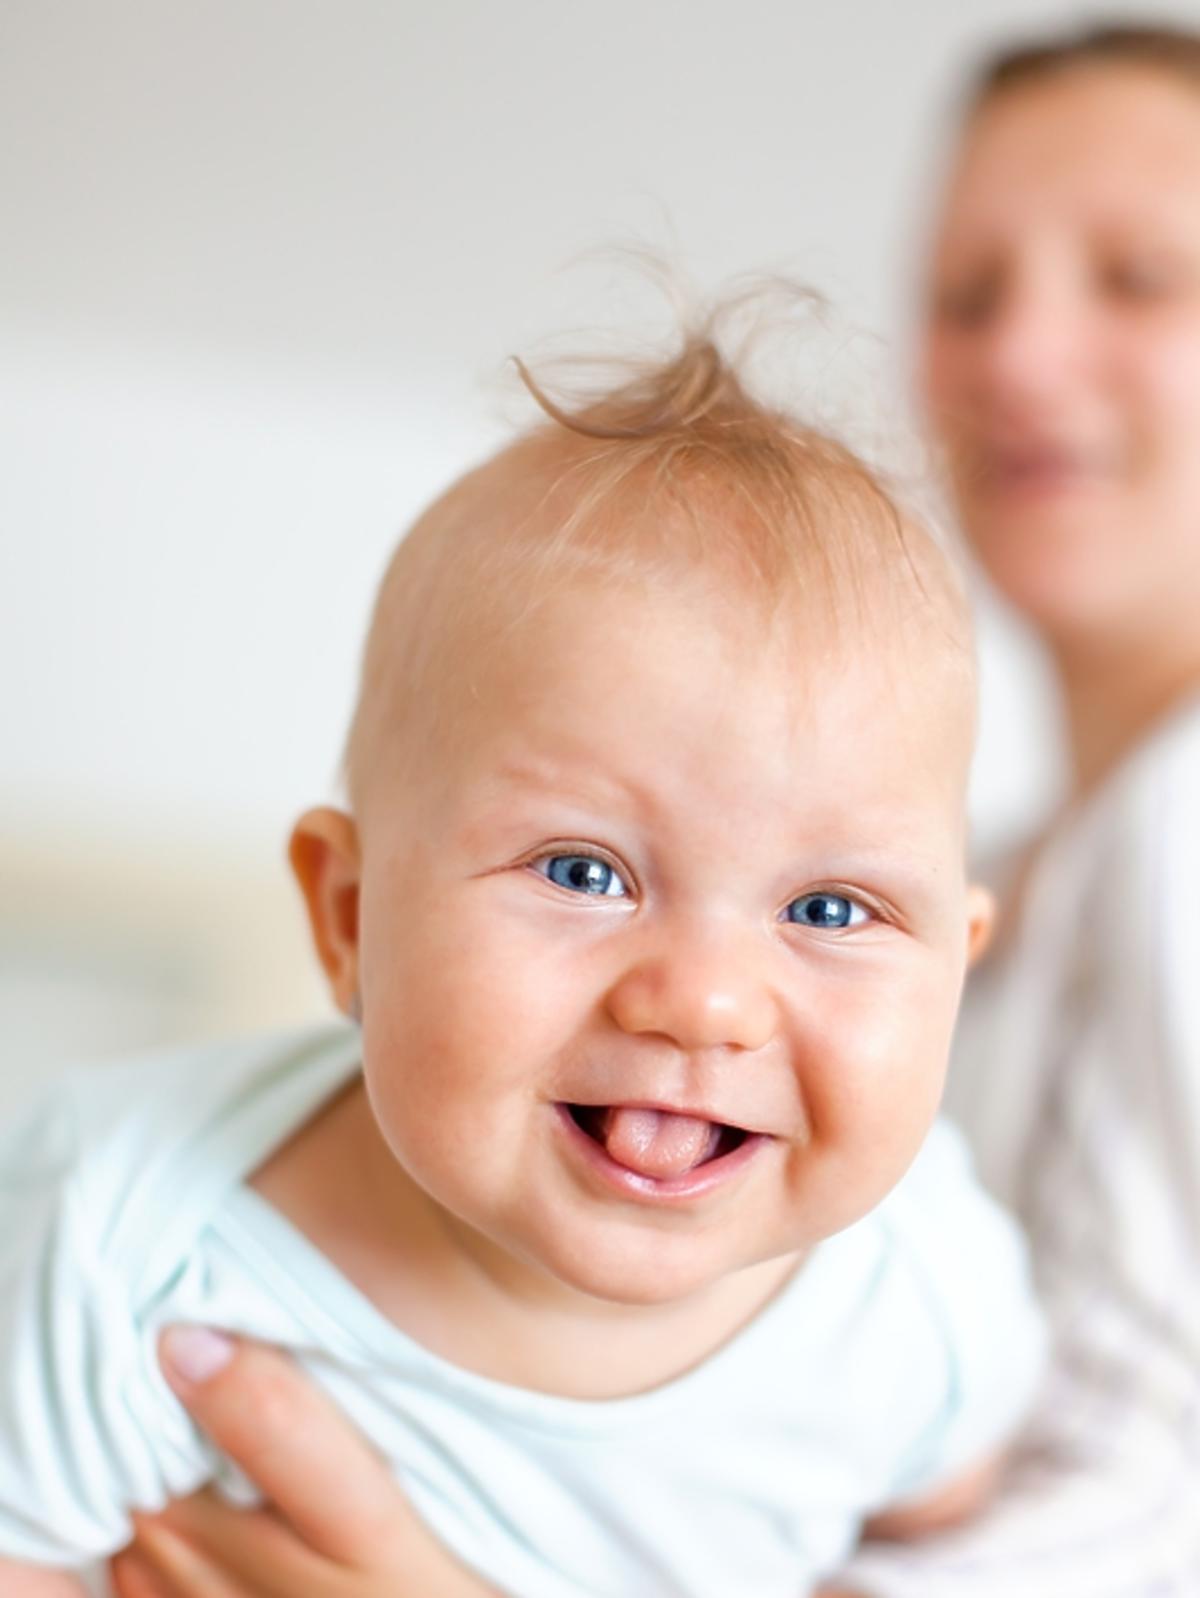 niemowlę, dziecko, rozwój mowy dziecka, uśmiech dziecka